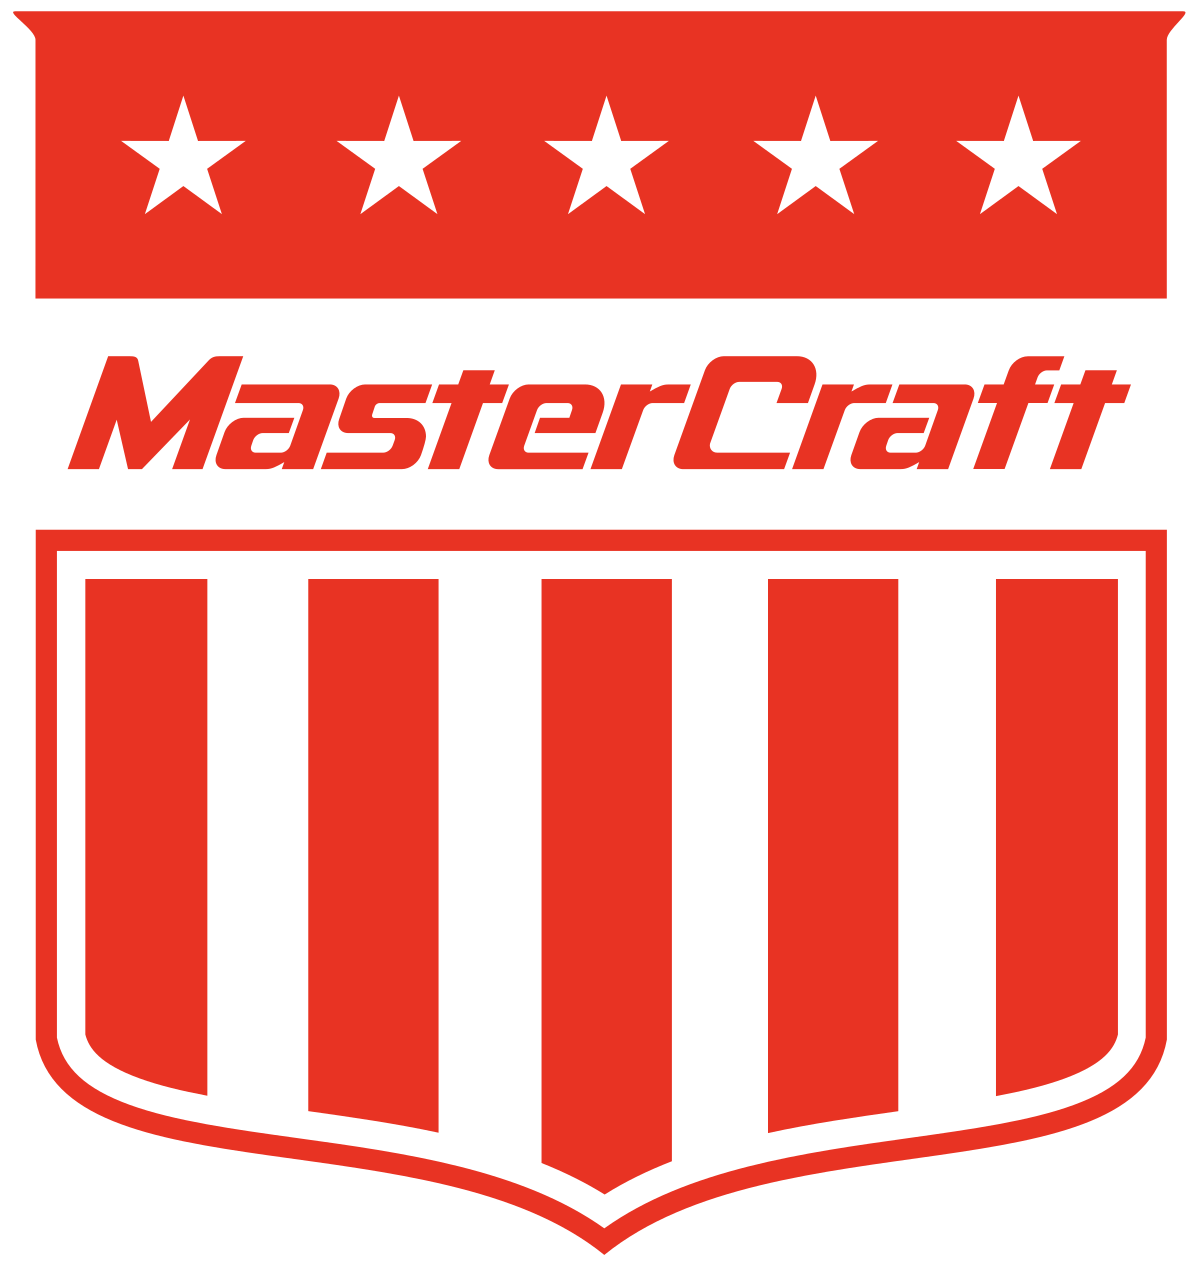 MasterCraft_Boat_Company_shield.svg (1)